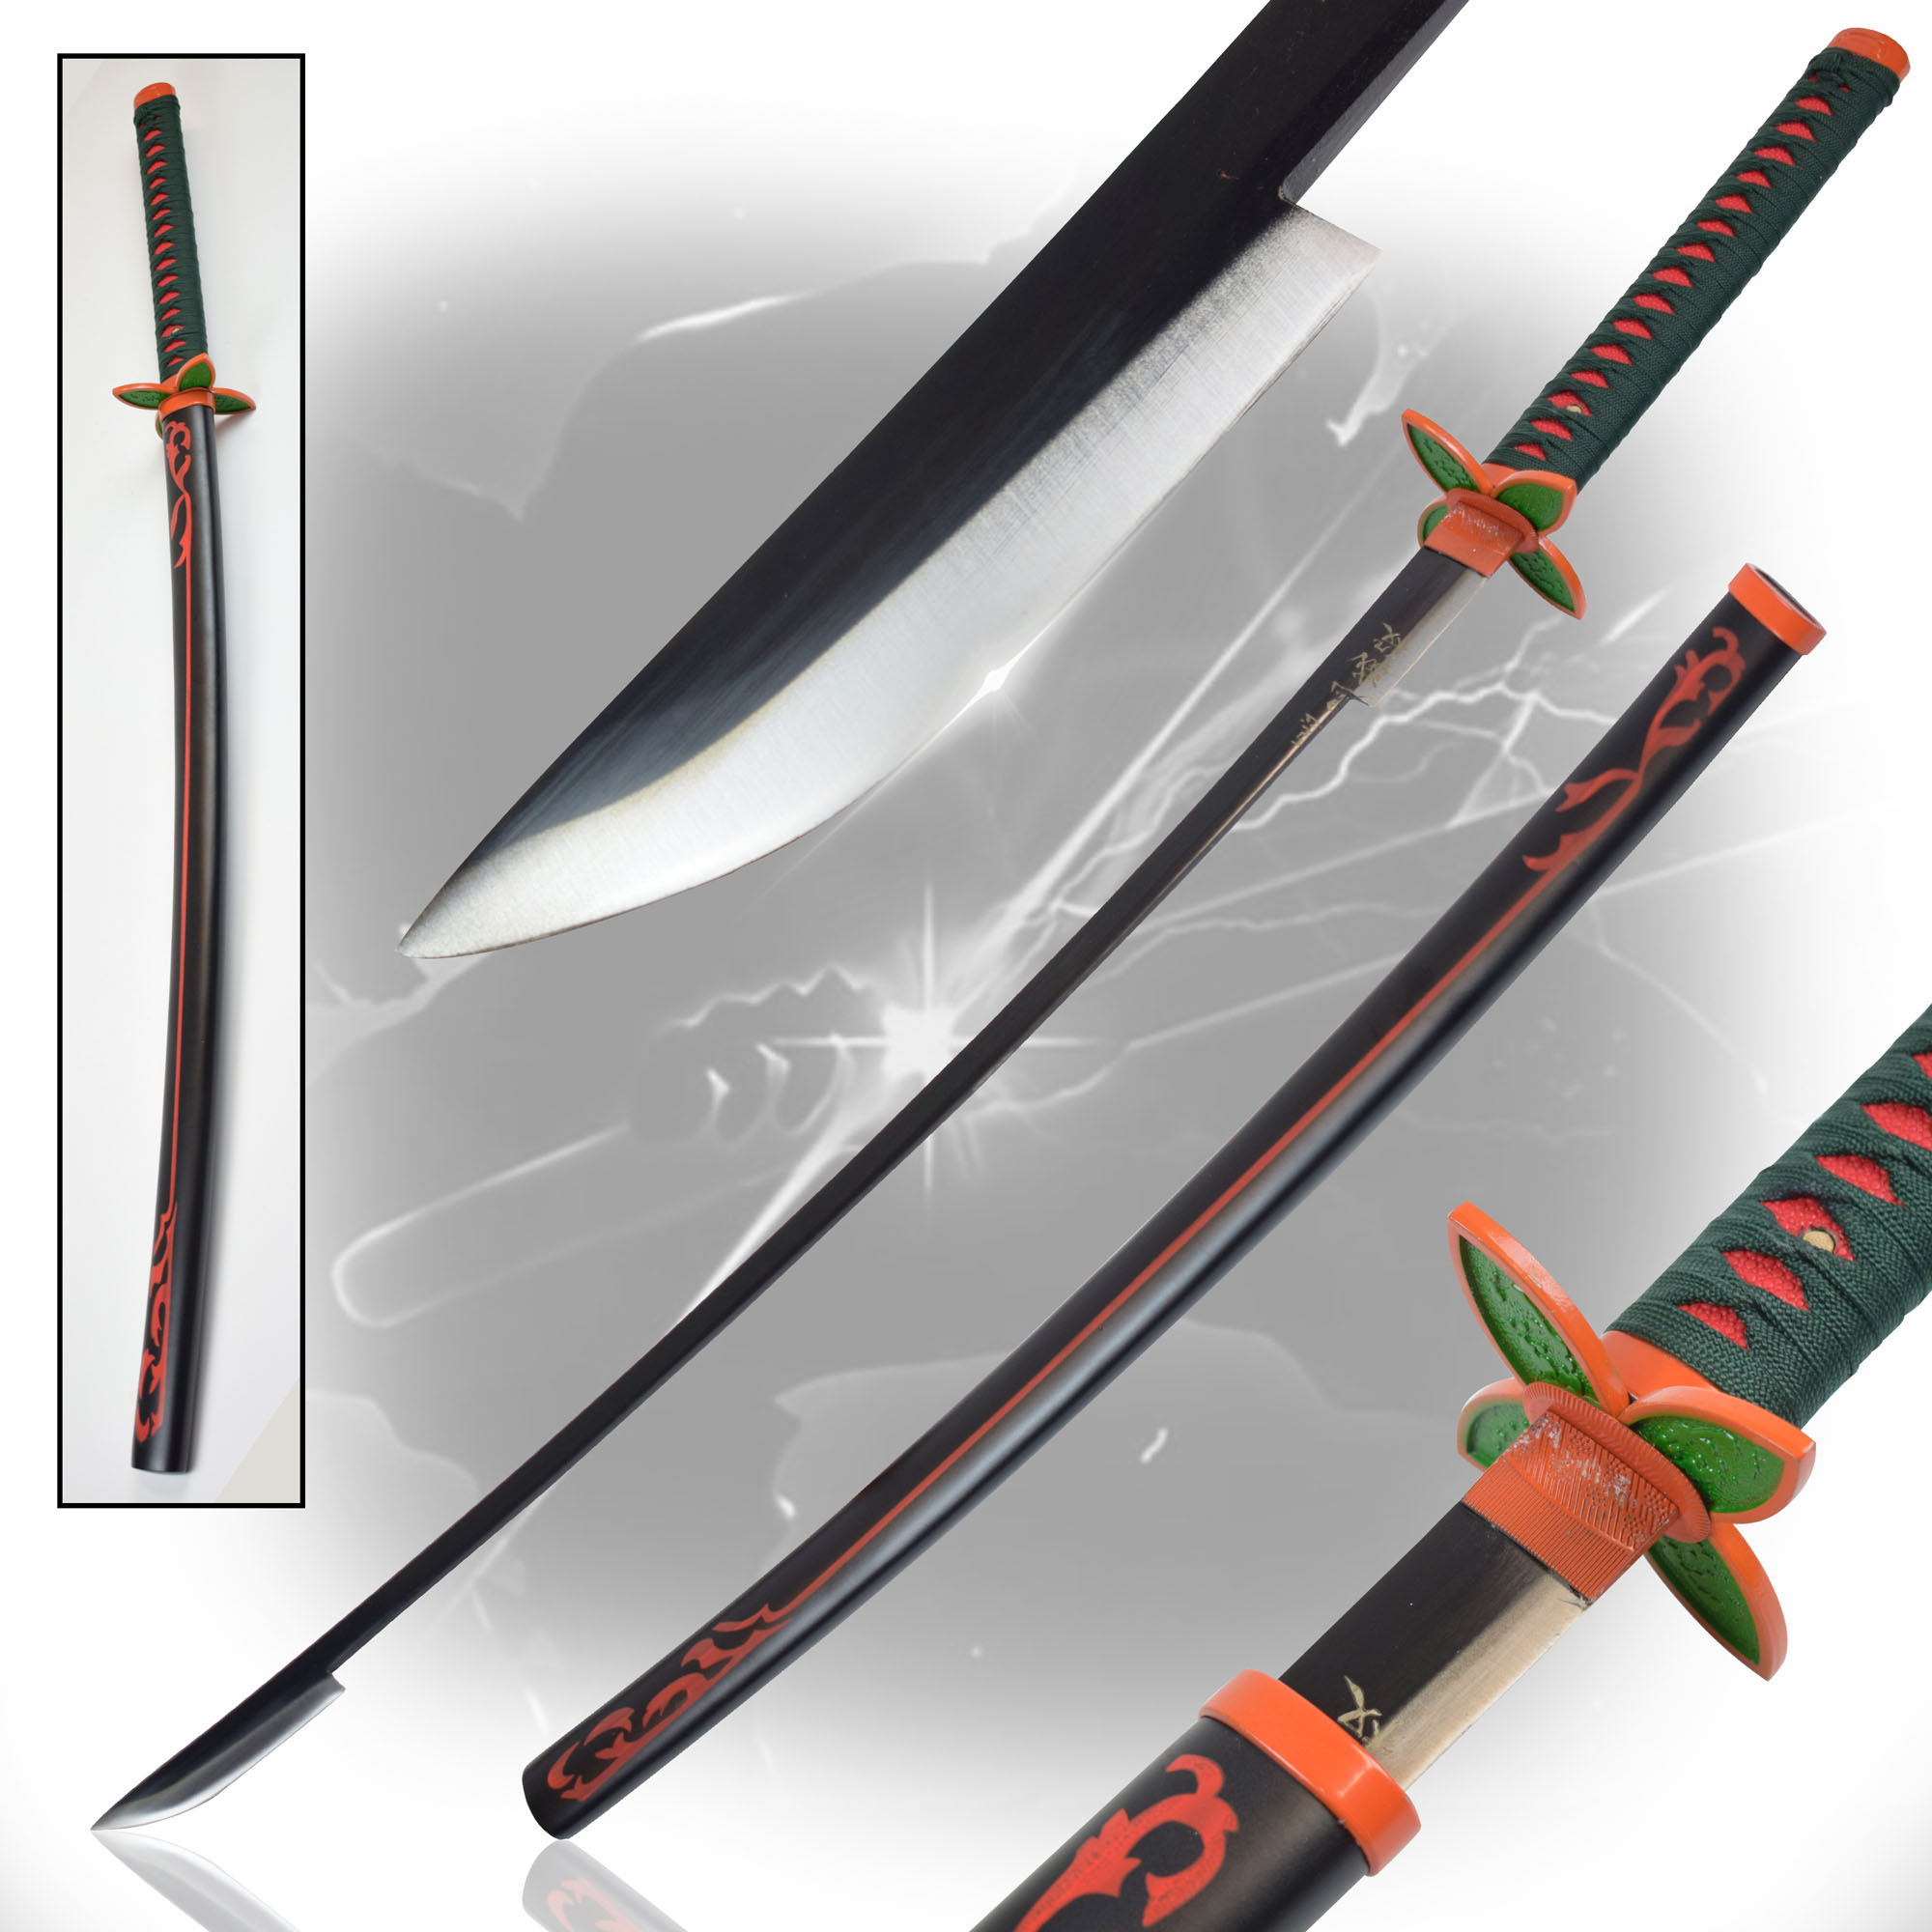 Demon Slayer: Kimetsu no Yaiba - Kochou Shinobu sword, handforged - Original Edition